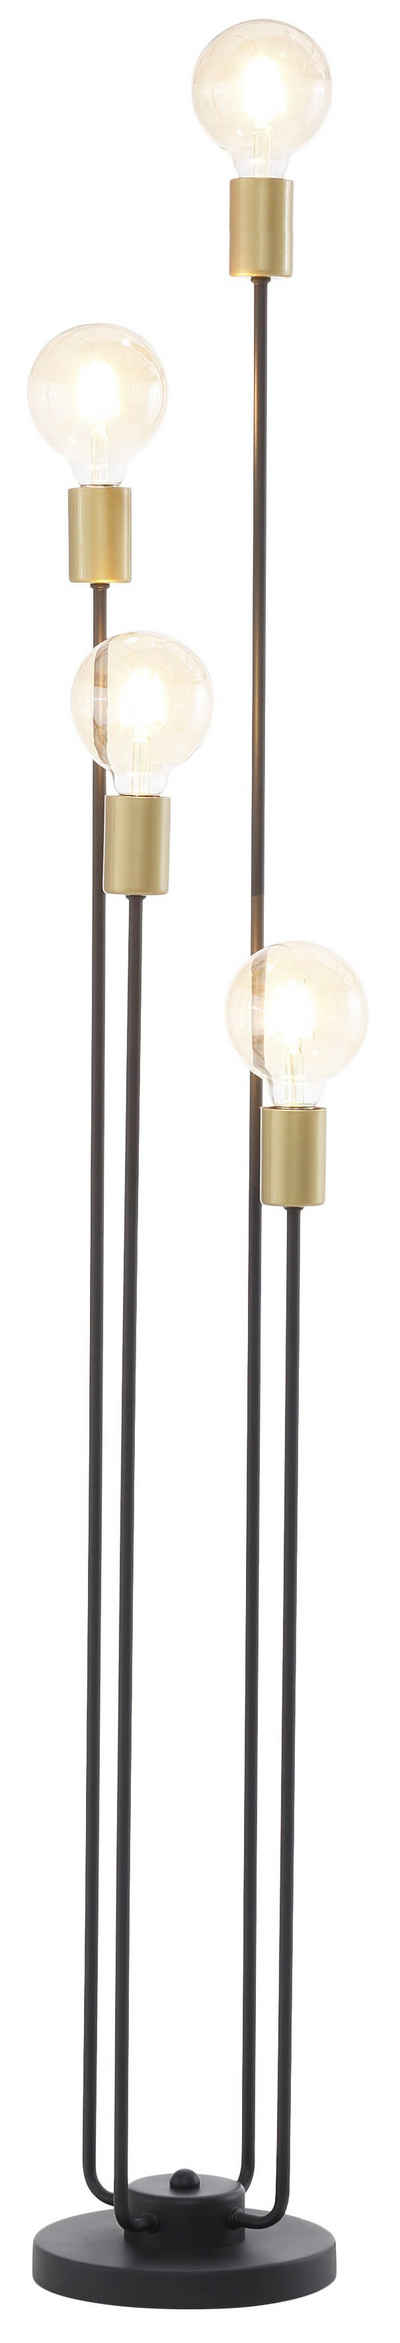 Leonique Stehlampe Jarla, ohne Leuchtmittel, Stehleuchte mit goldfarbenen/schwarzen Fassungen, Höhe 137 cm